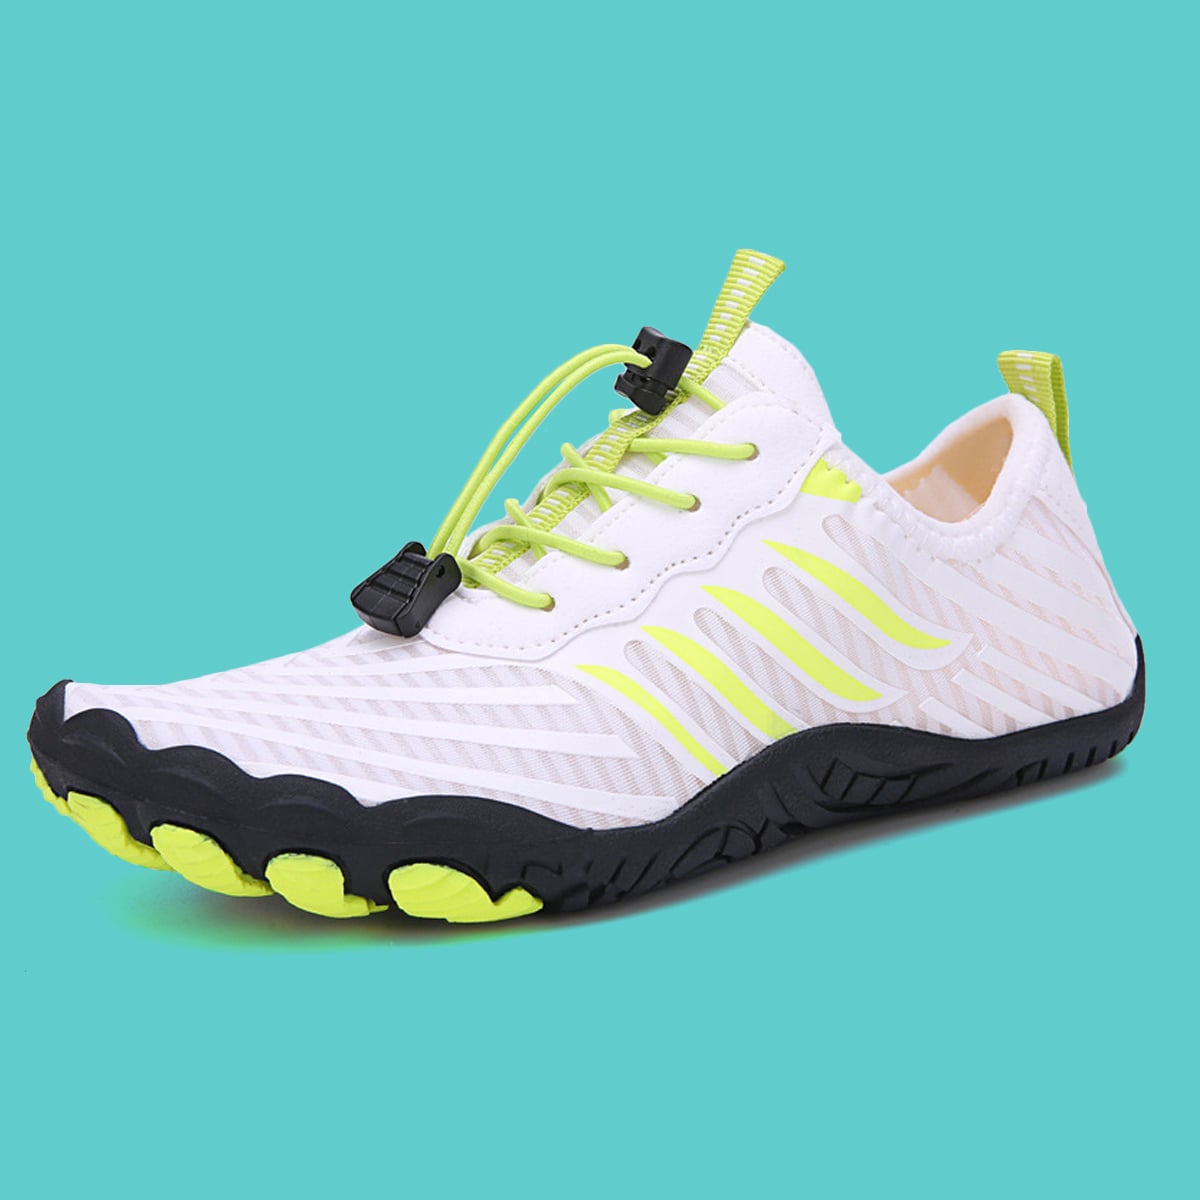 ActivePro™ Barefoot Shoes Breathable Zero Drop Sole, Durable Non-Slip Design